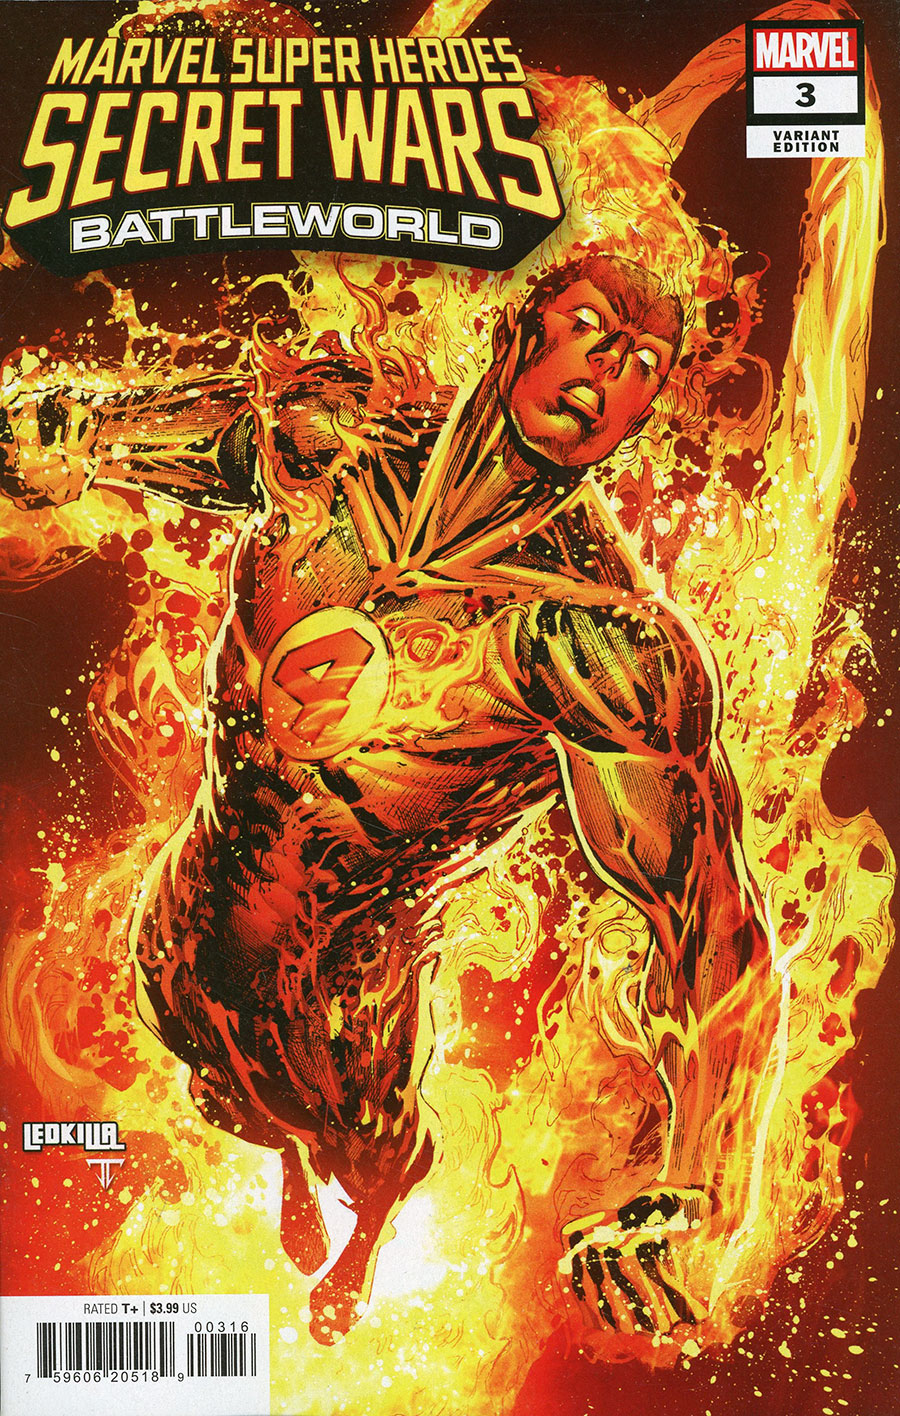 Marvel Super Heroes Secret Wars Battleworld #3 Cover F Incentive Ken Lashley Variant Cover